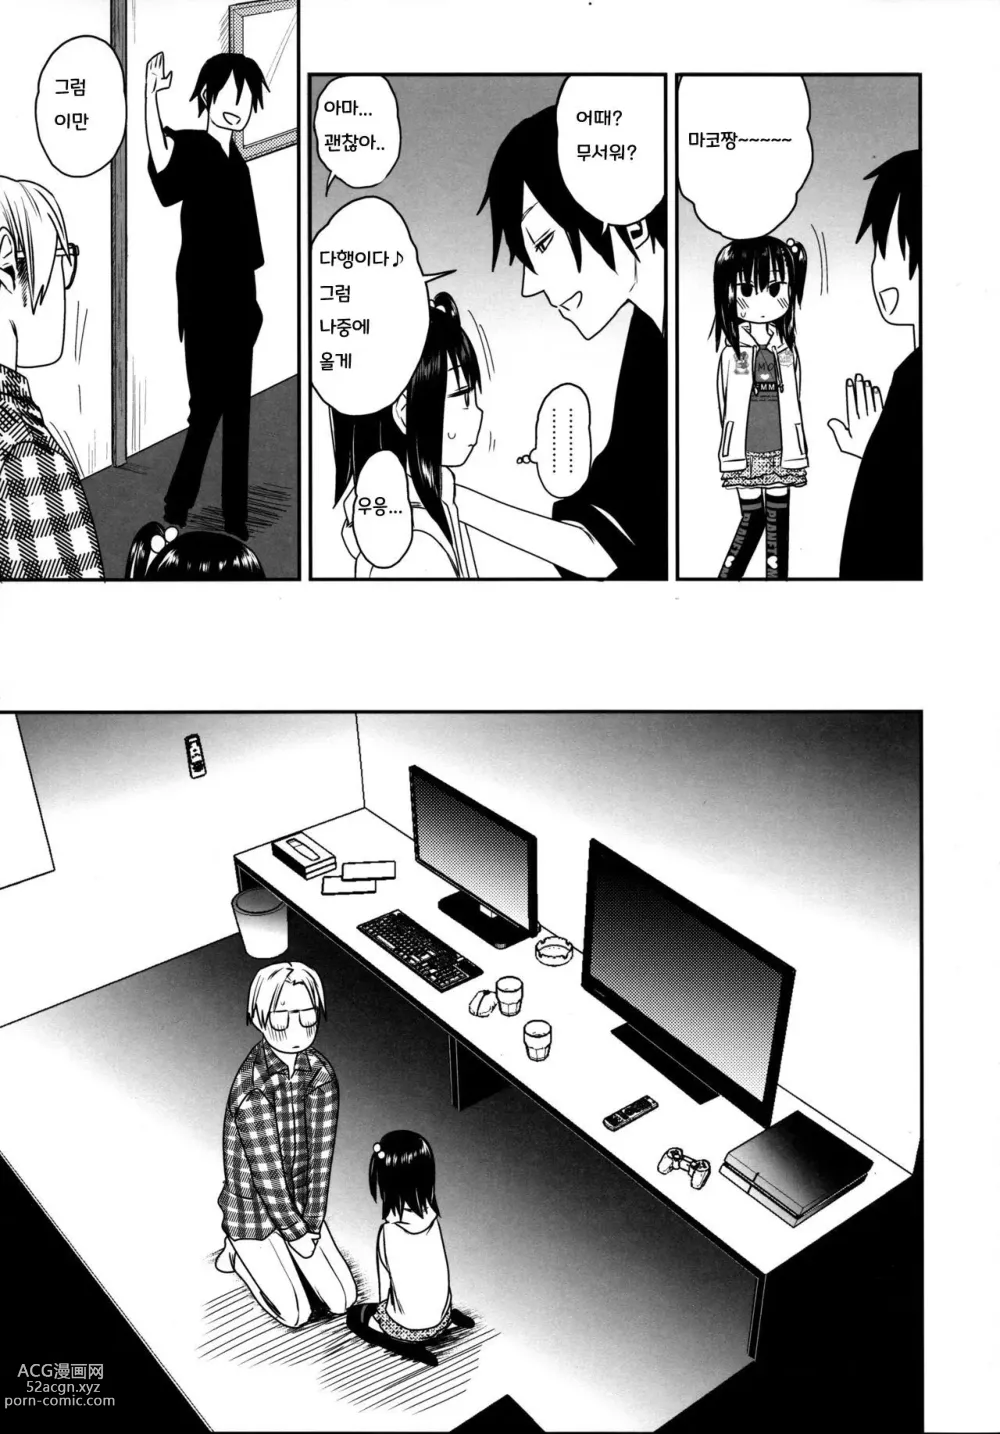 Page 15 of doujinshi Tonari no Mako-chan Season 2 Vol. 2